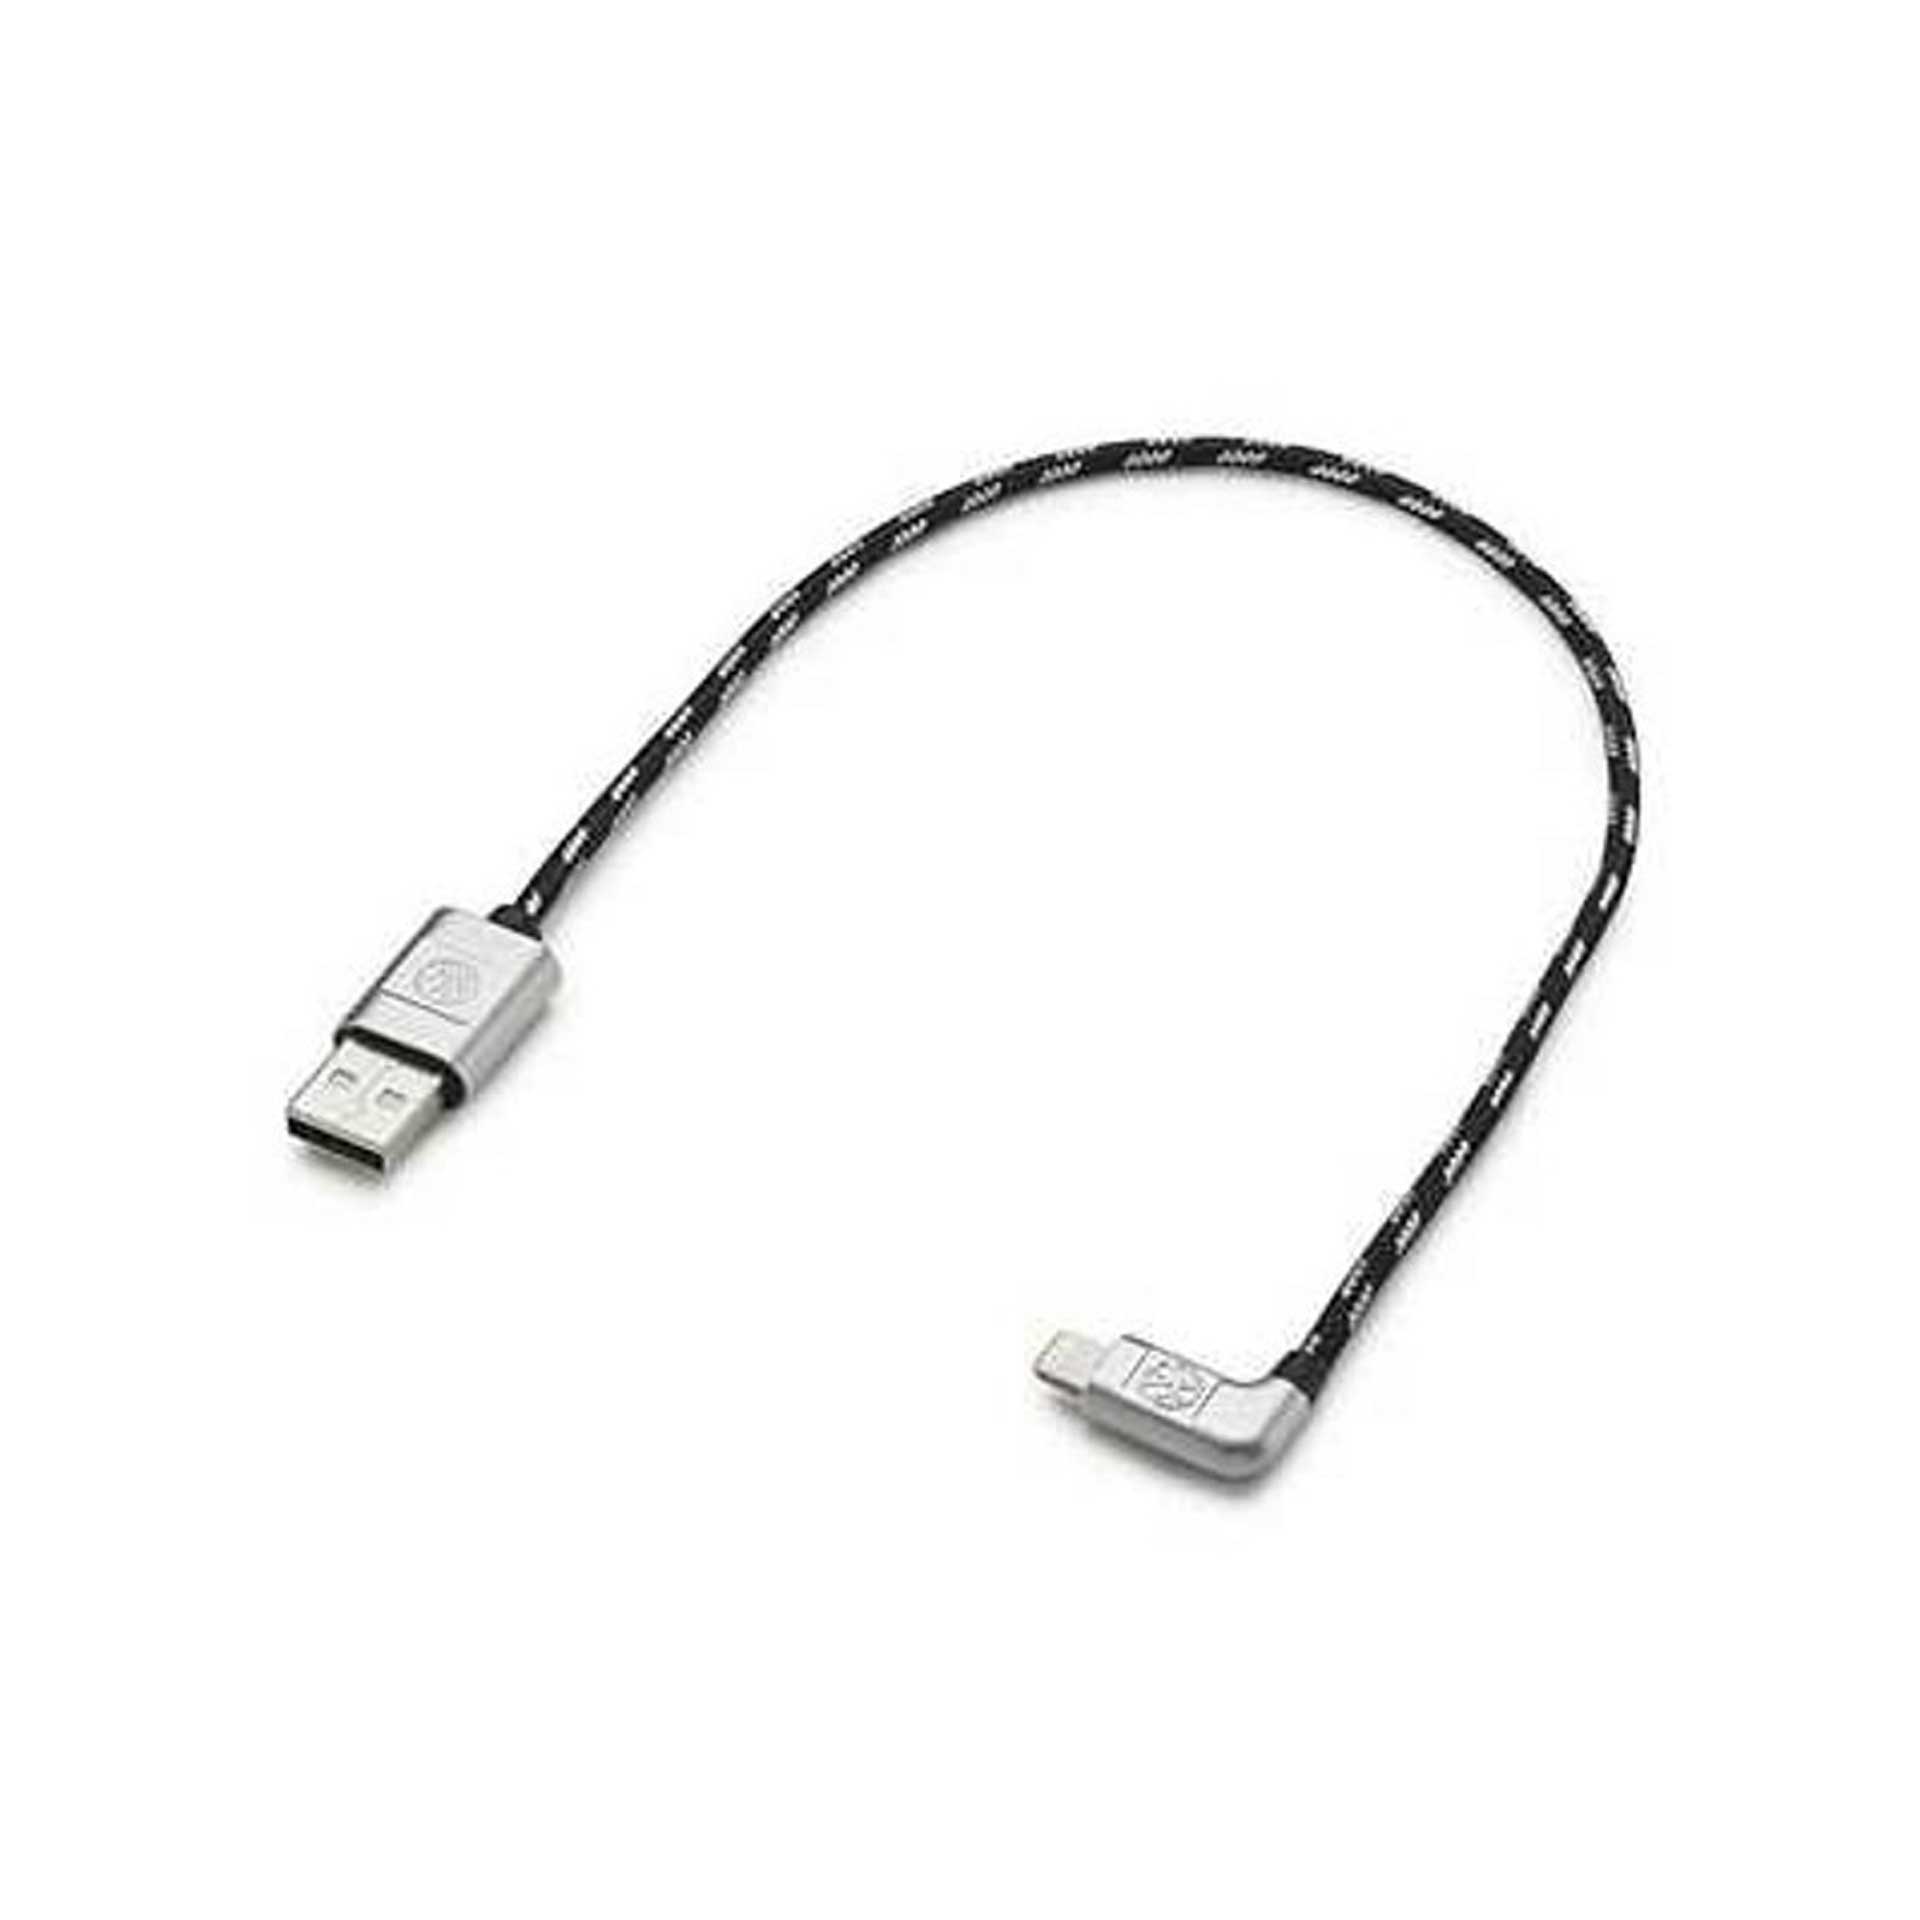 Volkswagen Anschlusskabel Ladekabel USB-A auf Apple Lightning 30 cm